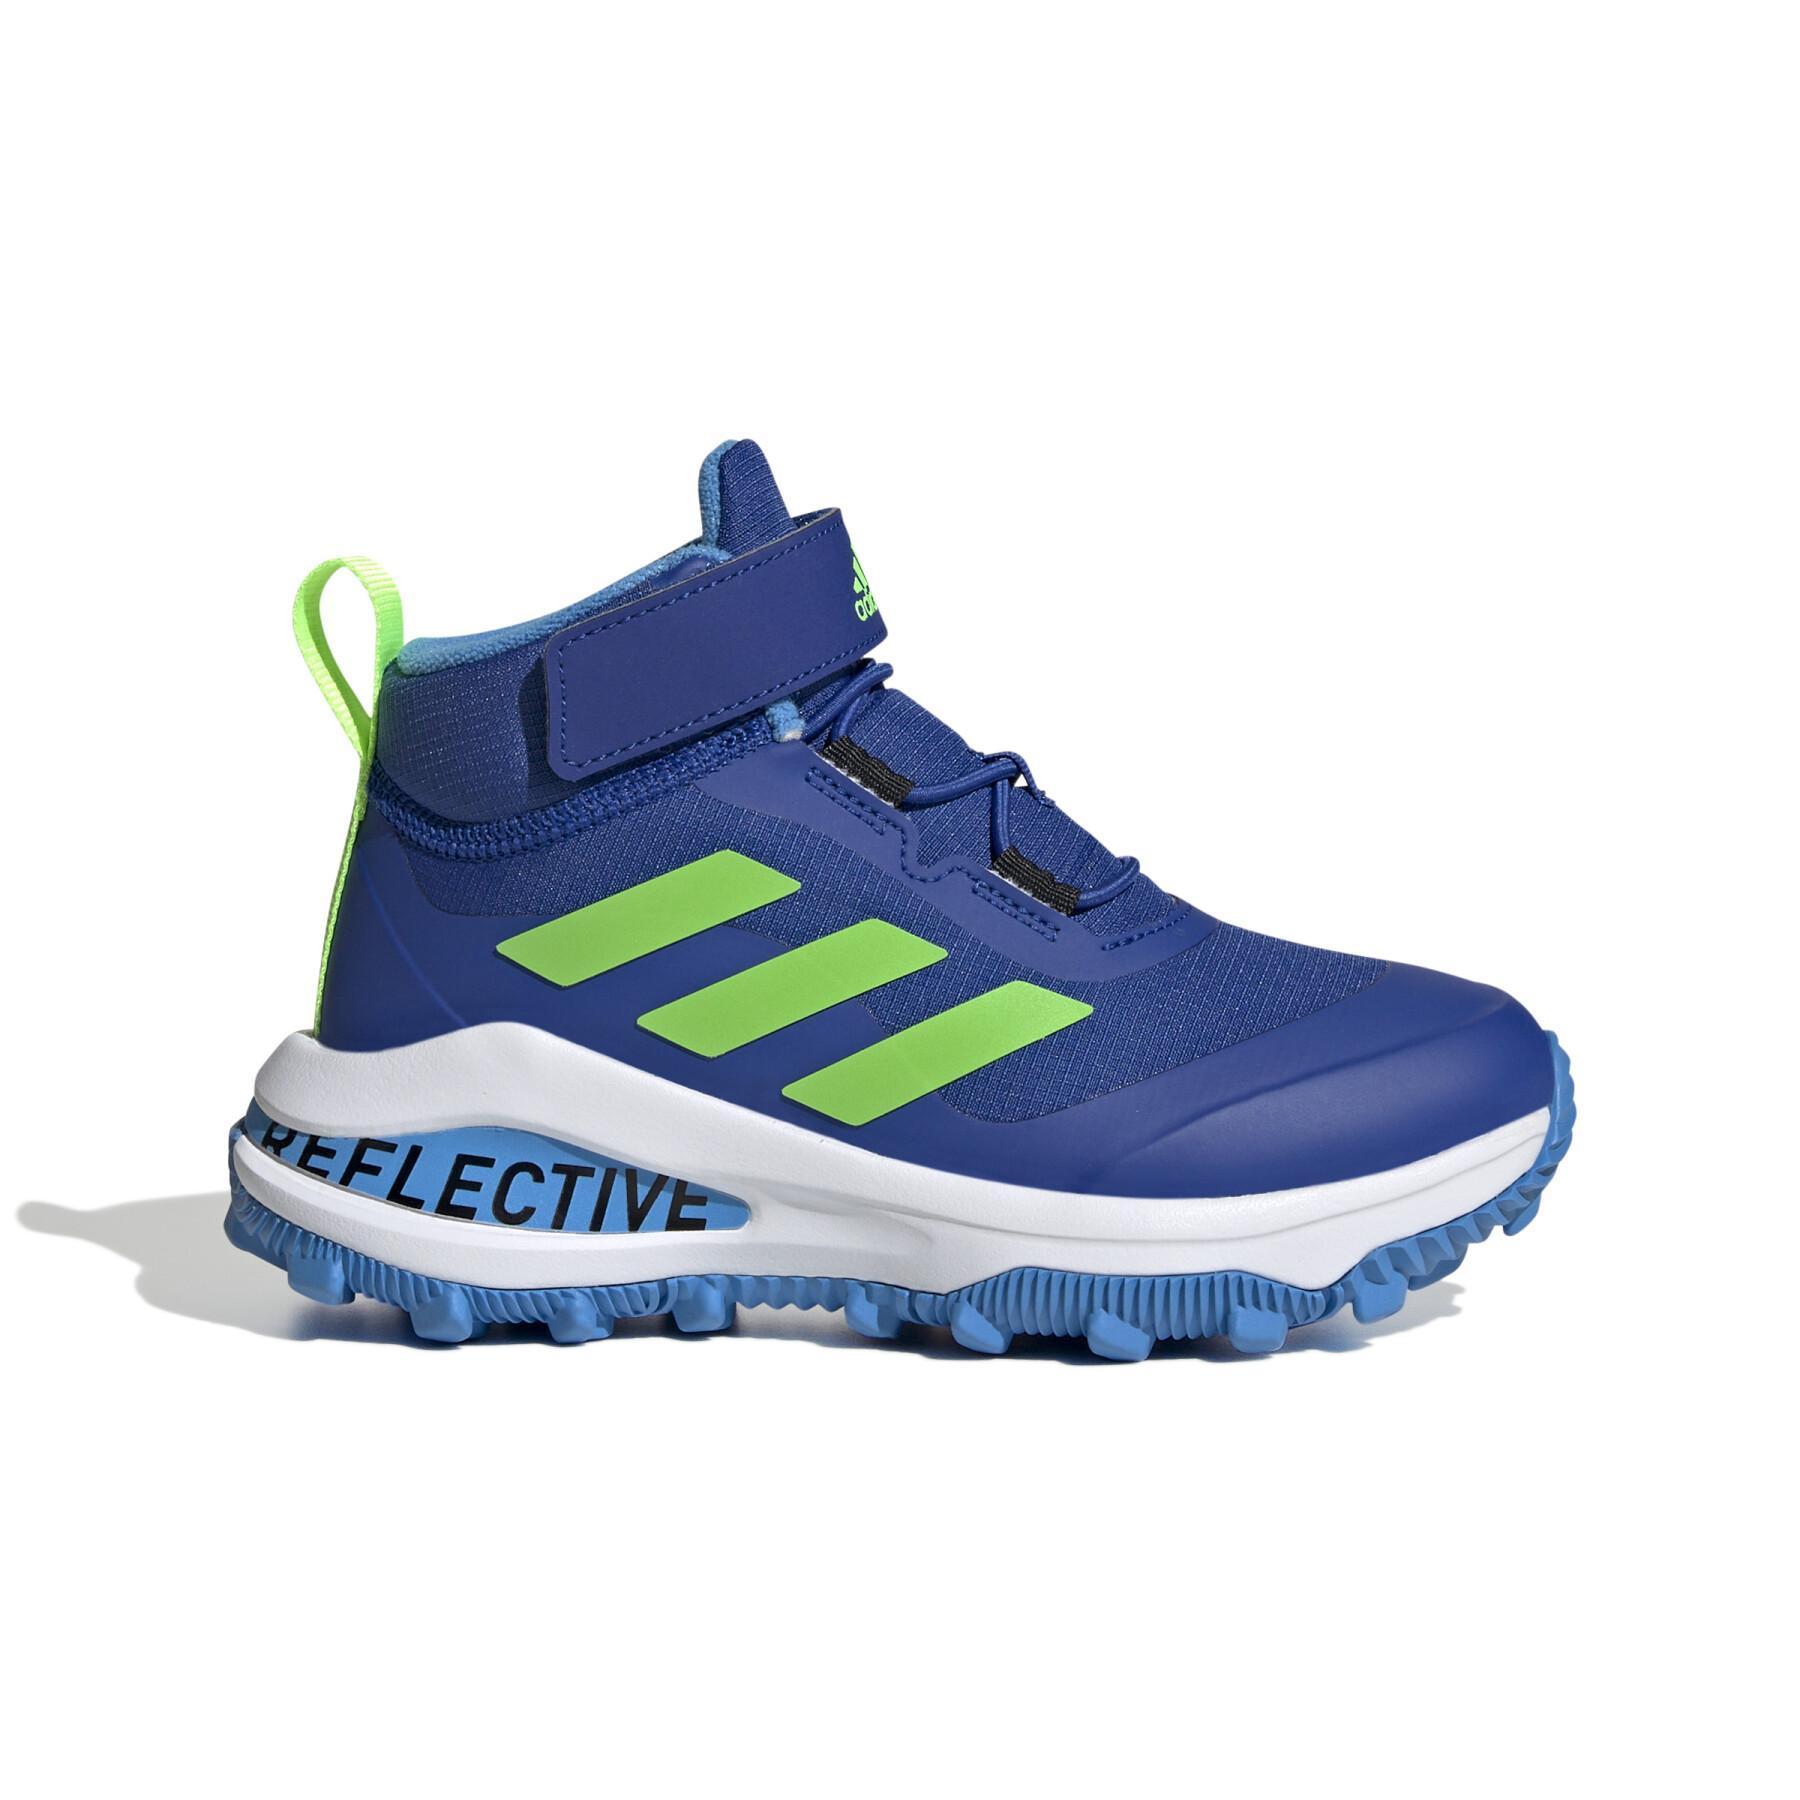 Kinder-Laufschuhe mit elastischen Schnürsenkeln und Klettverschluss adidas Fortarun All Terrain Cloudfoam Sport